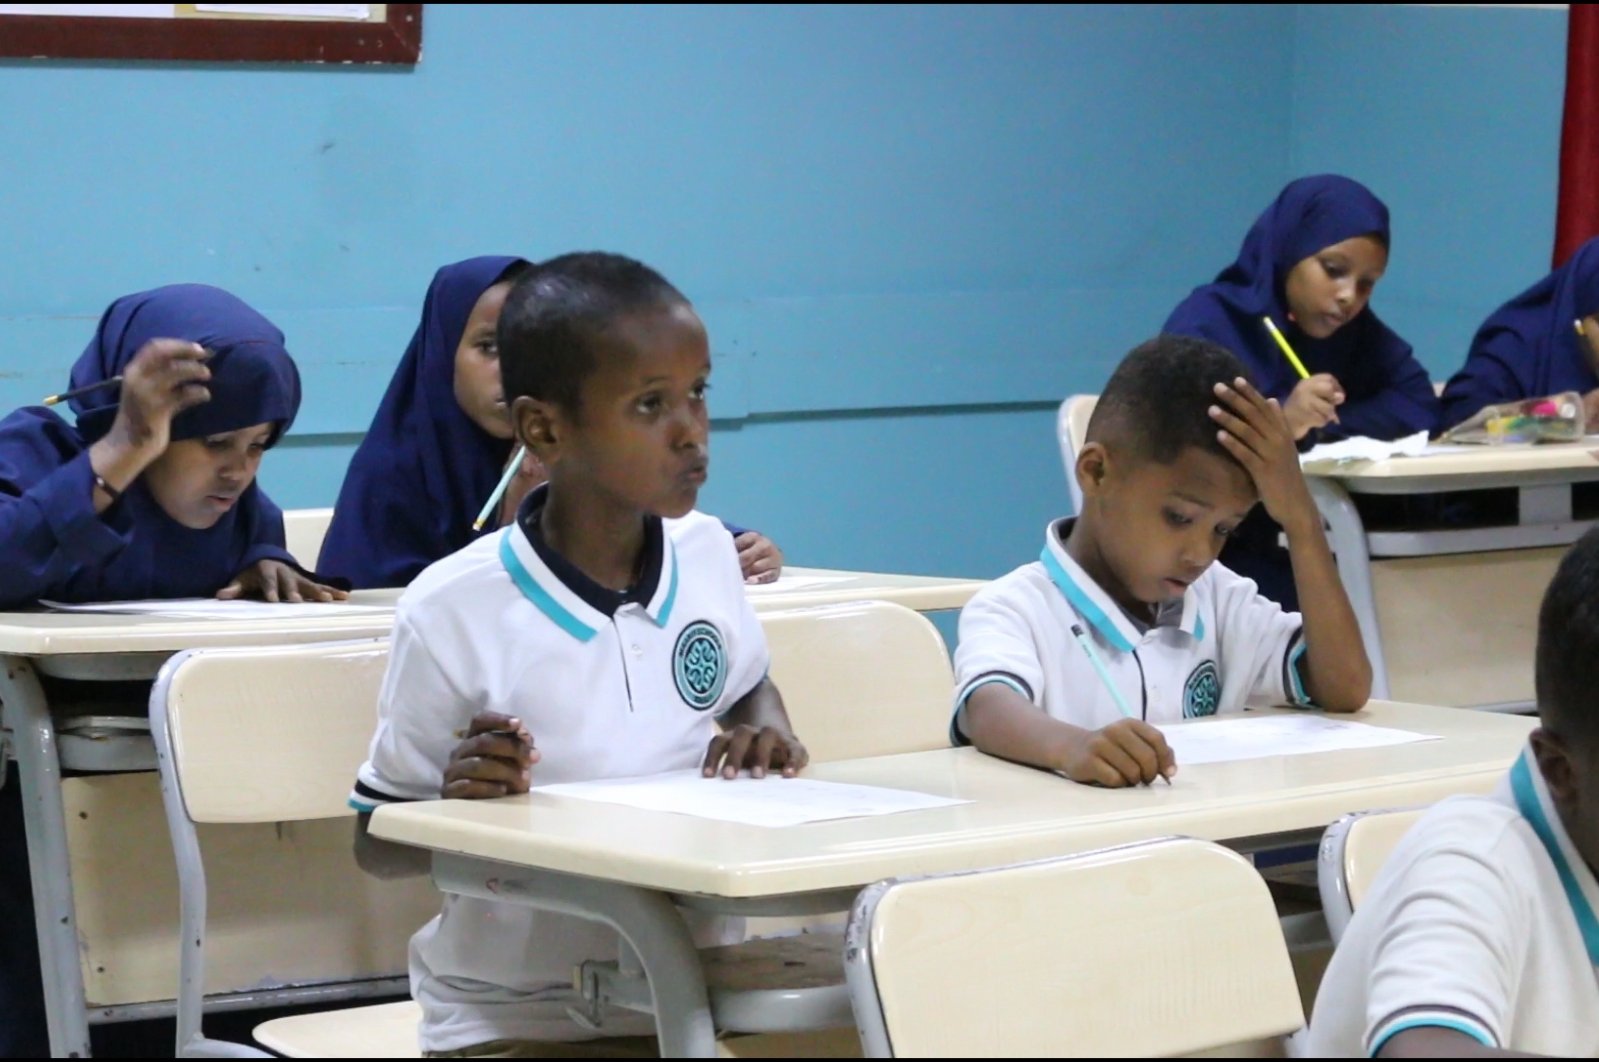 Students in a classroom at a Turkish Maarif Foundation school in Mogadishu, Somalia, May 21, 2022. (AA Photo)